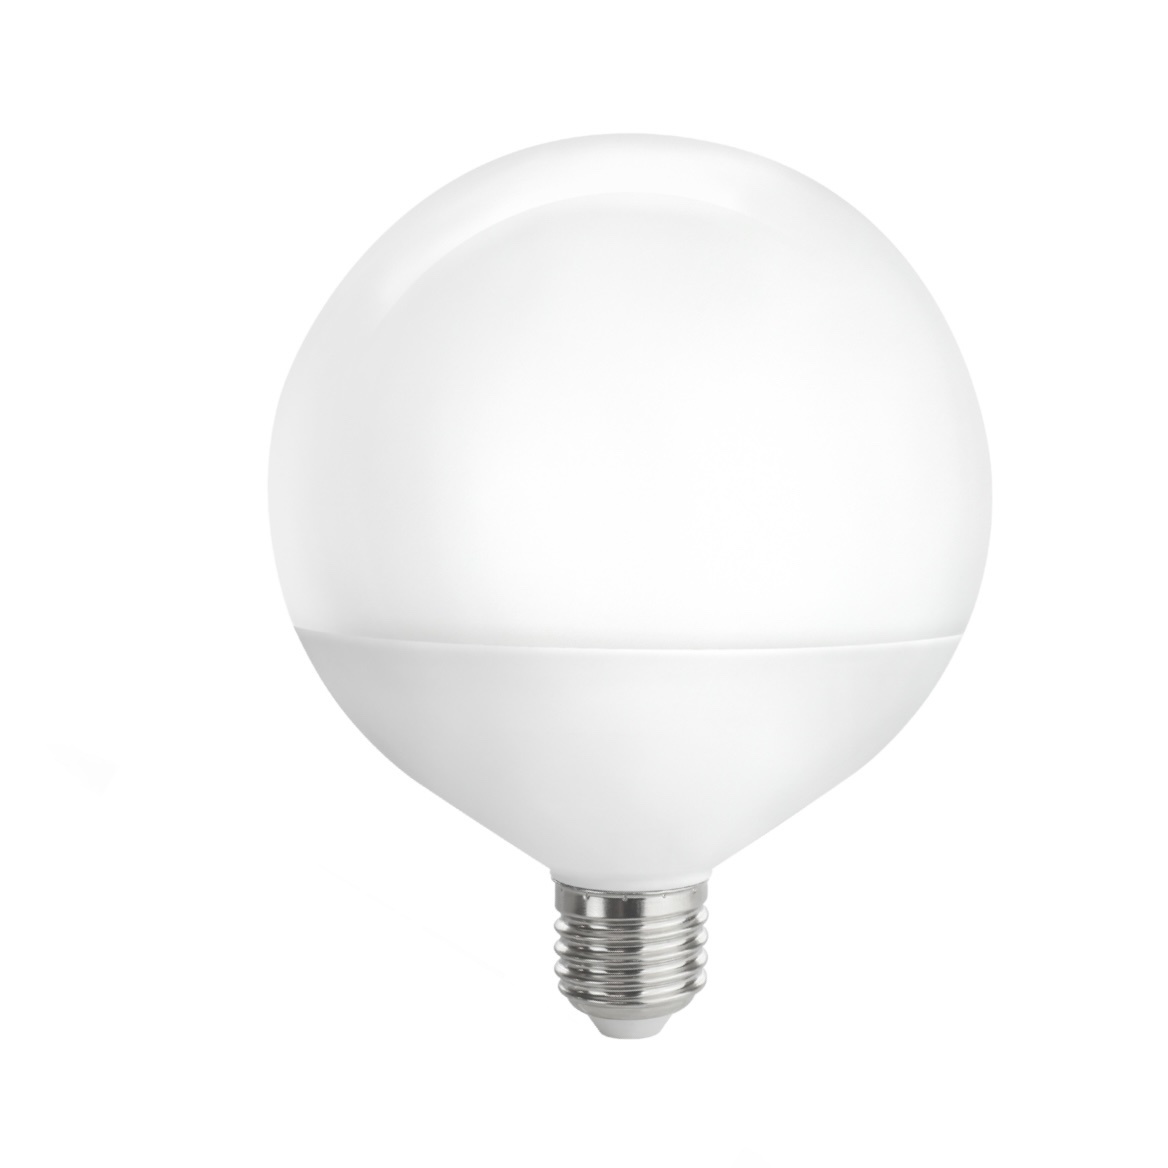 slinger besteden haalbaar LED lamp - XL G120 E27 - 18W vervangt 100W - 6400K daglicht wit -  Ledlichtdiscounter.nl